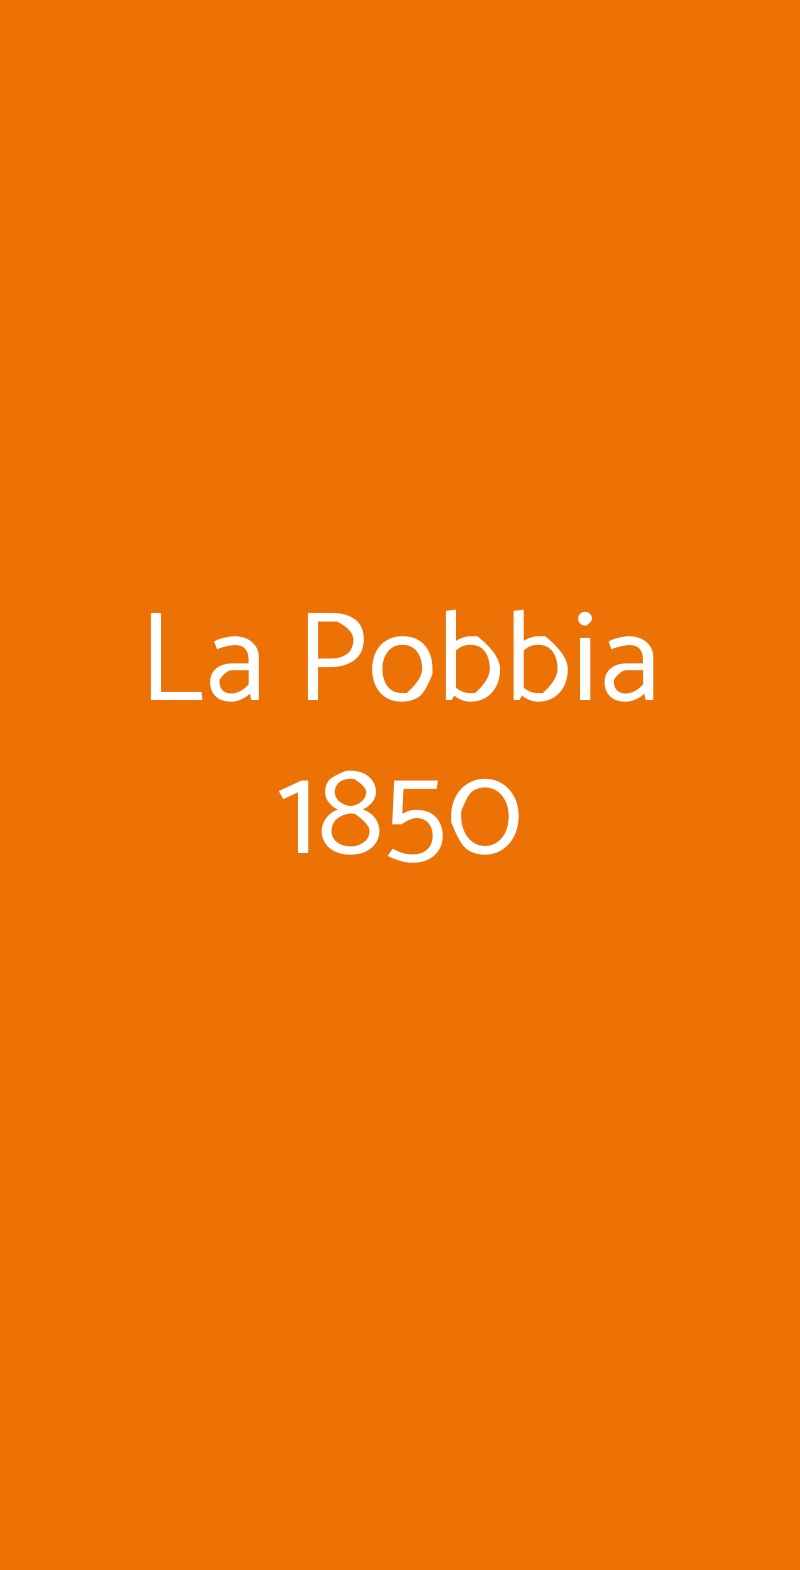 La Pobbia 1850 Milano menù 1 pagina